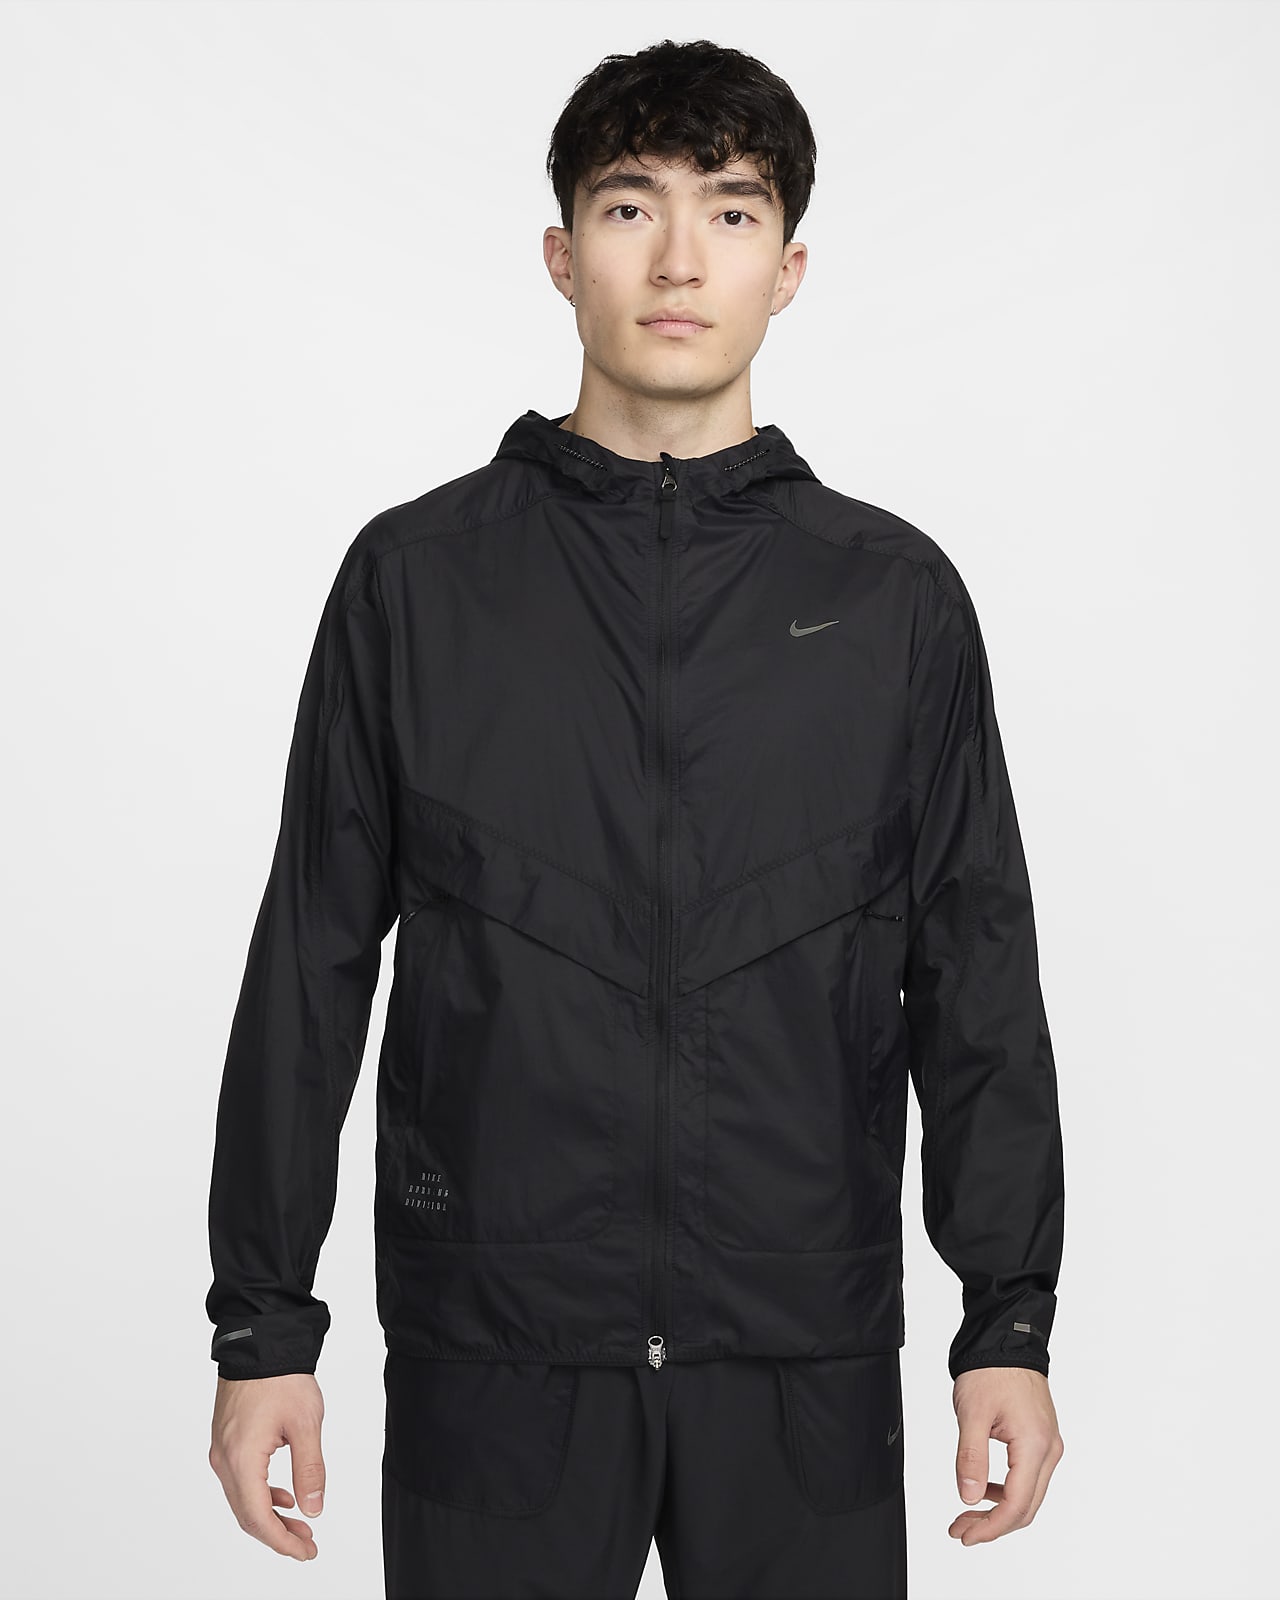 Nike Running Division Men's UV Running Jacket